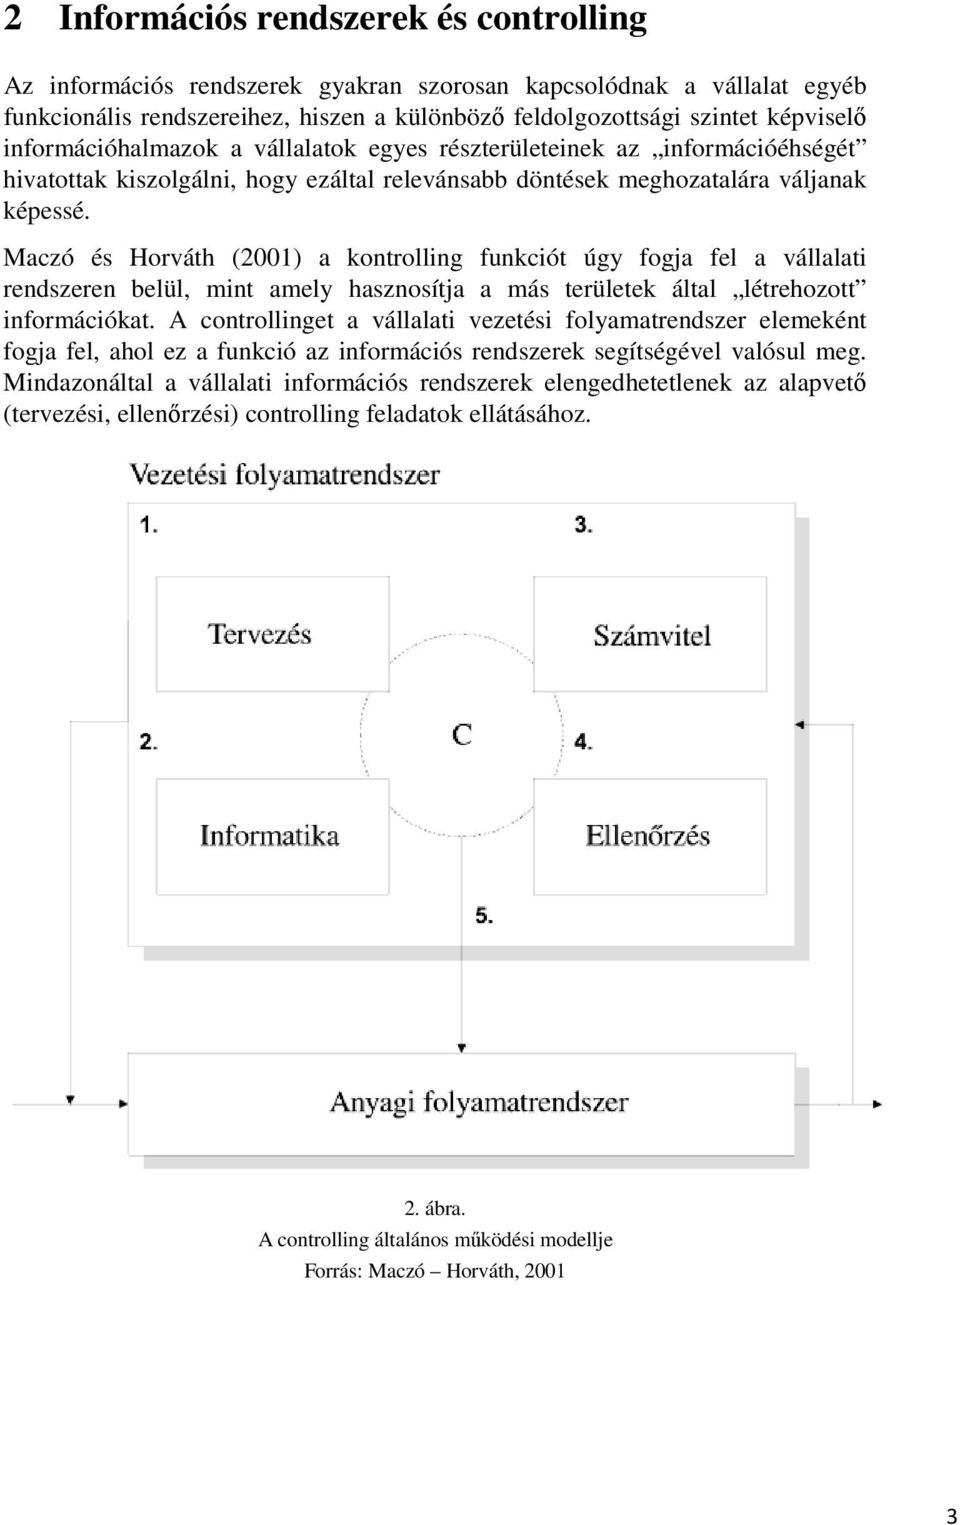 Maczó és Horváth (2001) a kontrolling funkciót úgy fogja fel a vállalati rendszeren belül, mint amely hasznosítja a más területek által létrehozott információkat.